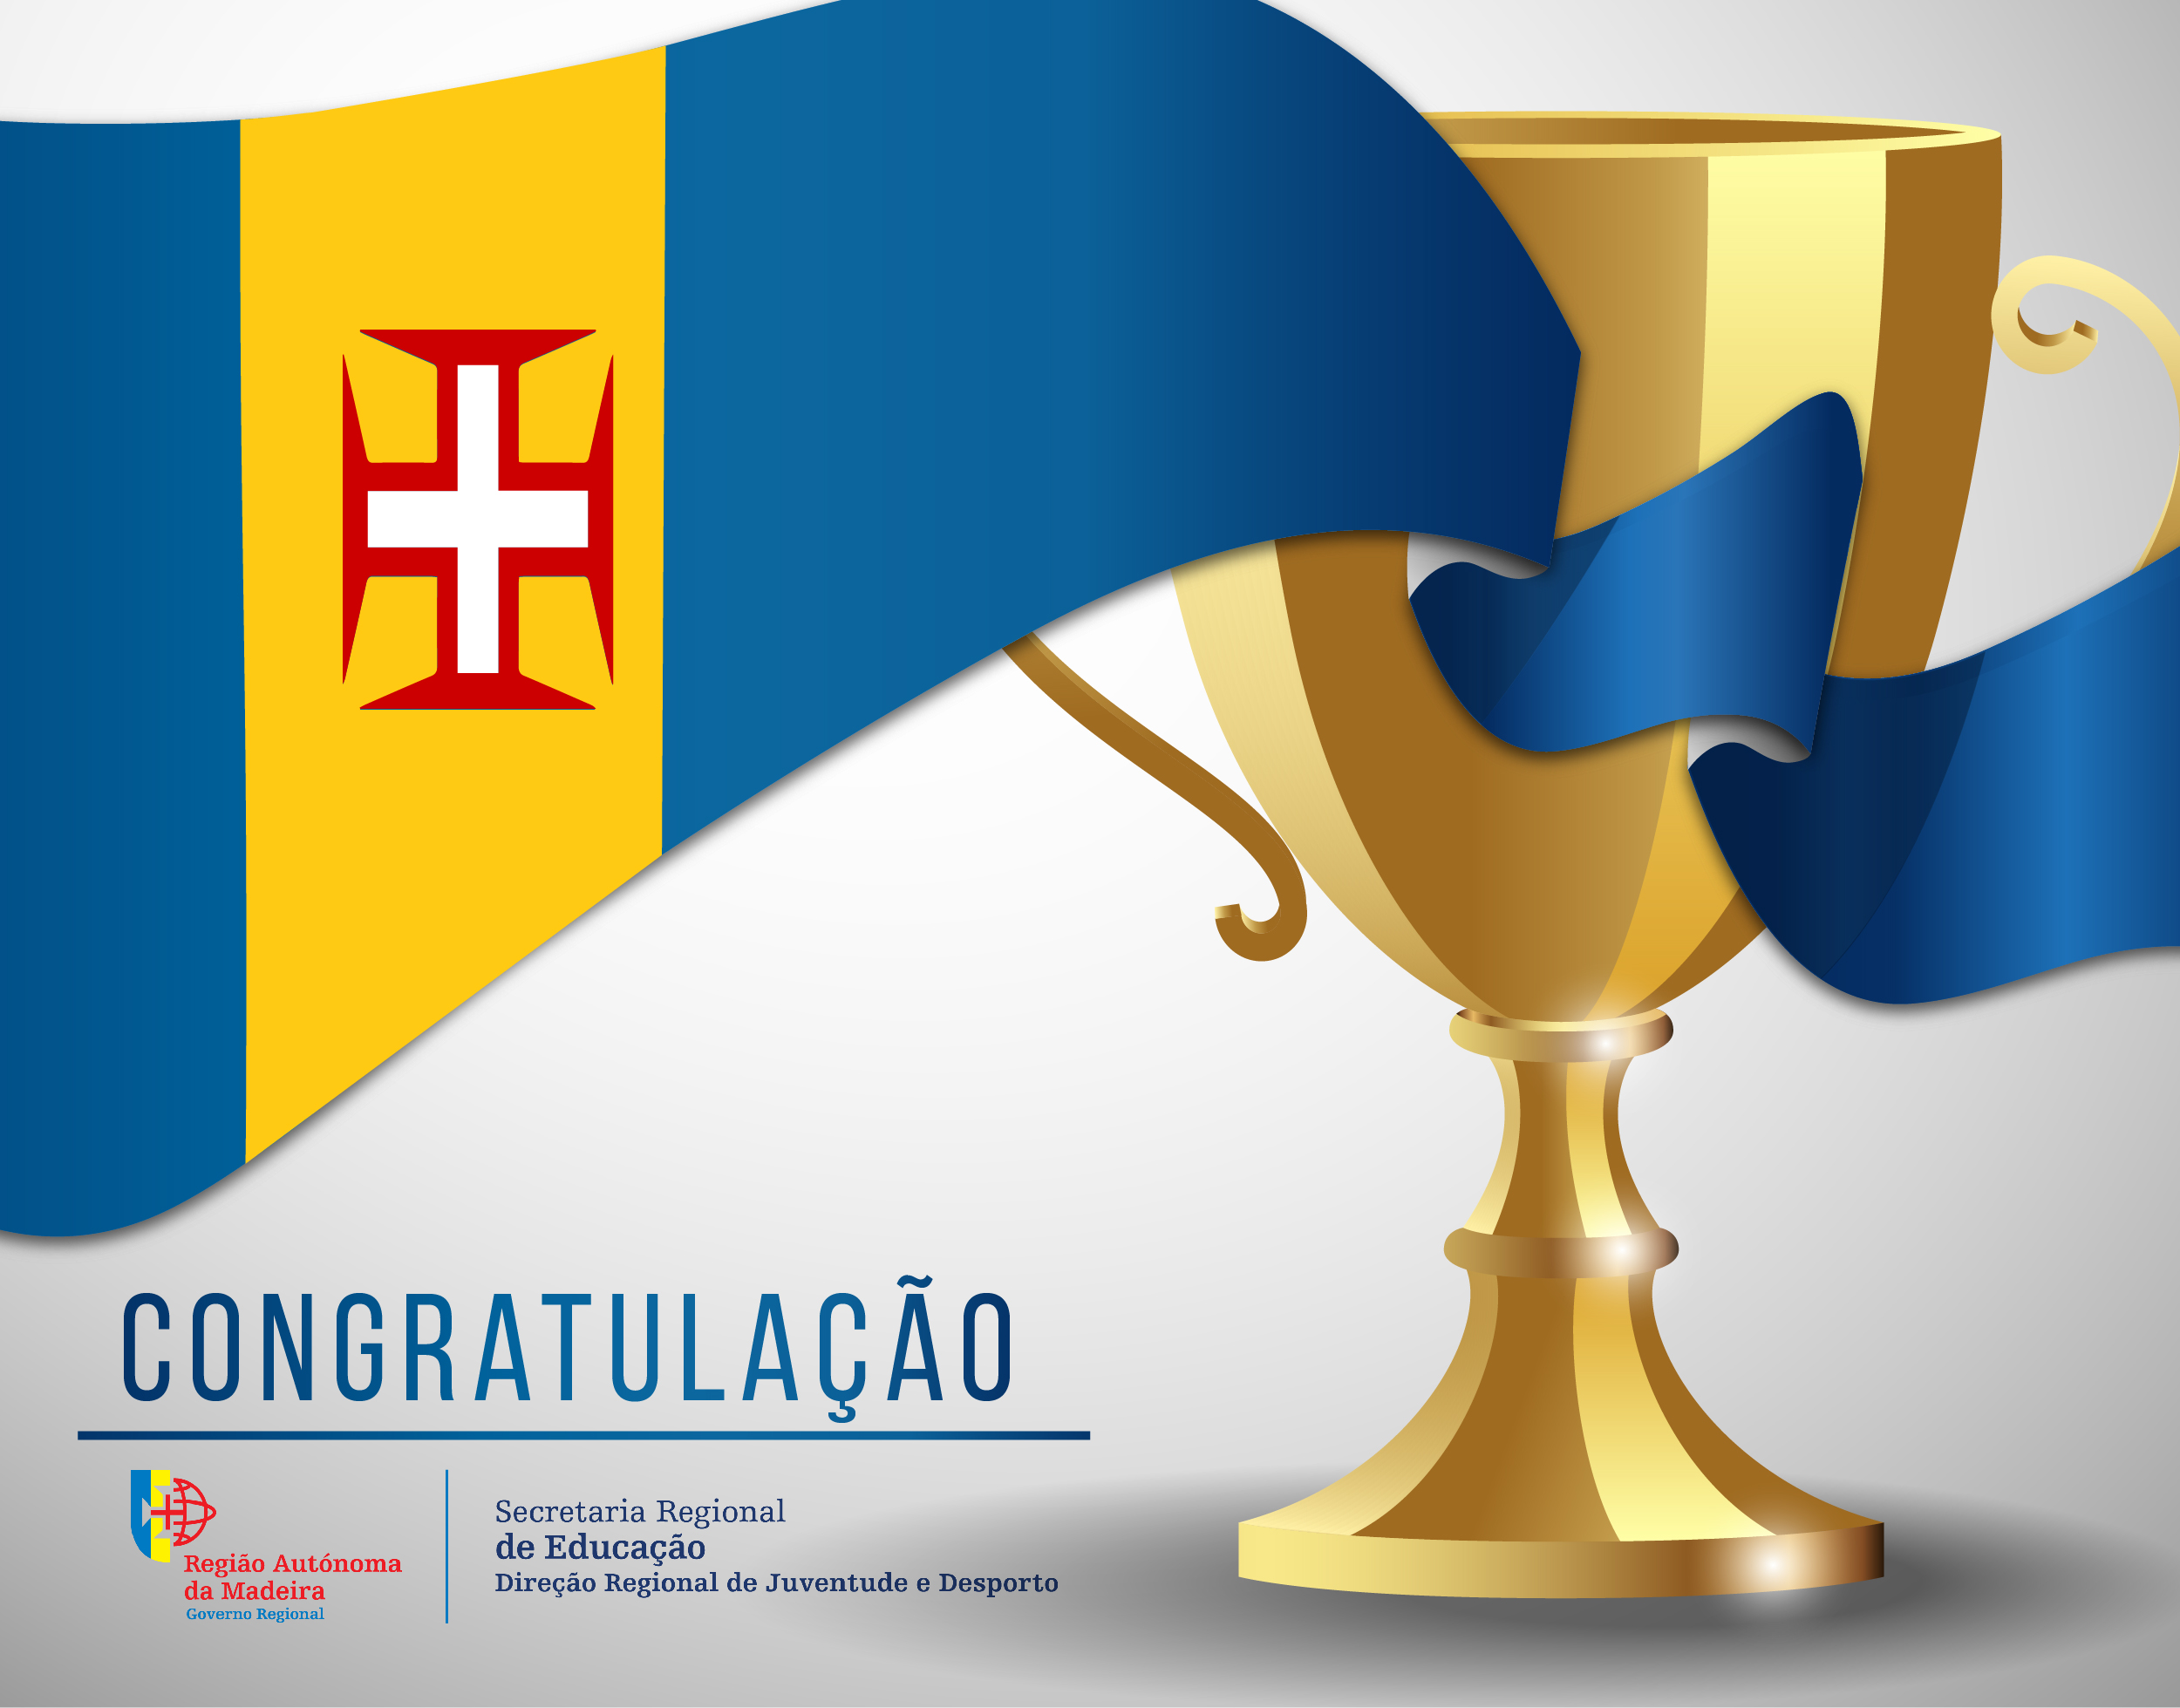 Congratulação - Eduardo Pereira (Associação Desportiva de Muay Thai da Madeira)